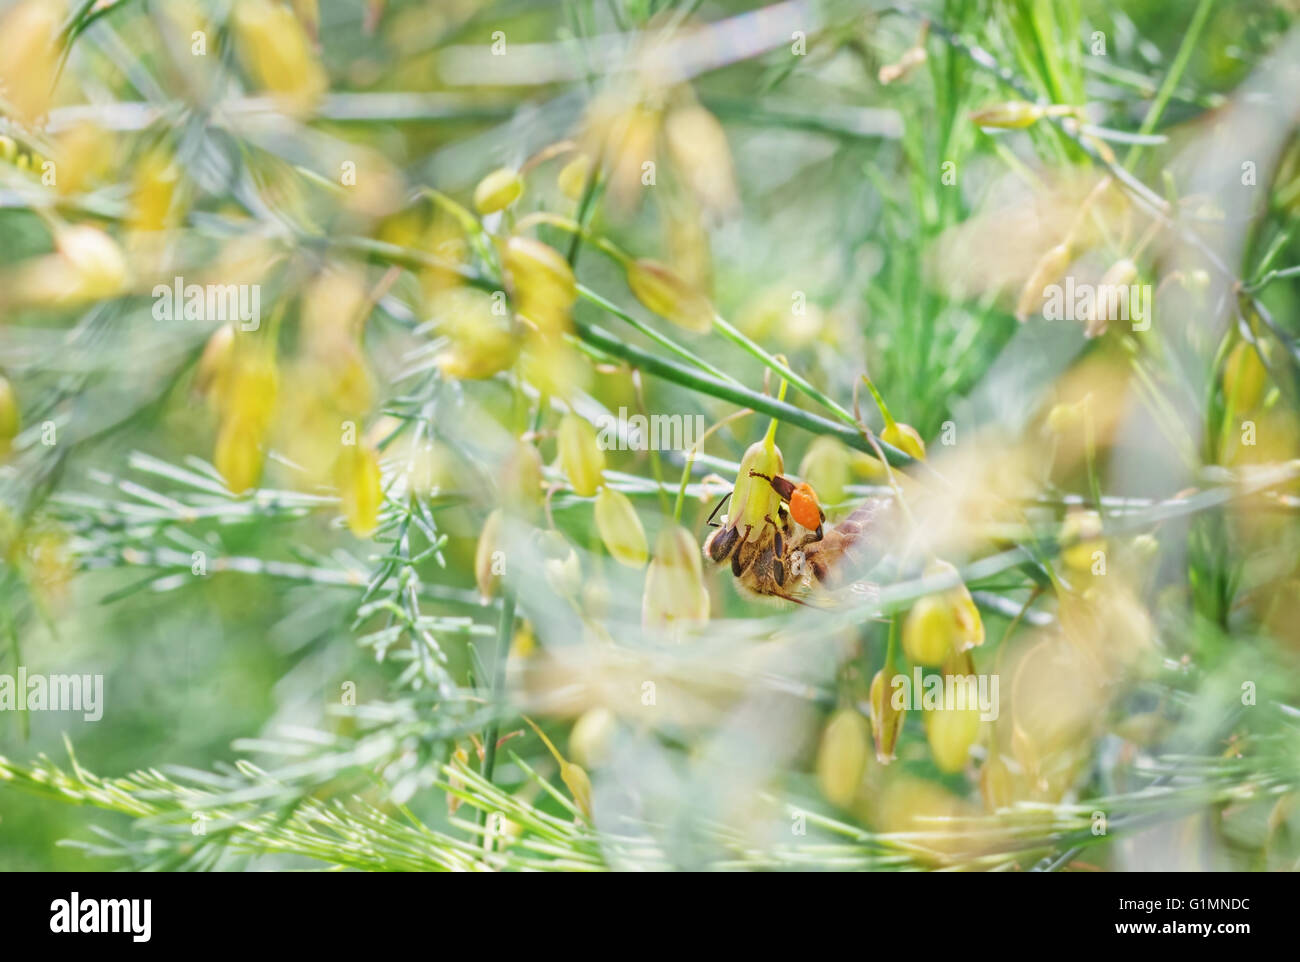 Bella bee al disopra del ramo con fiori di colore giallo al giorno d'estate e di sole Foto Stock